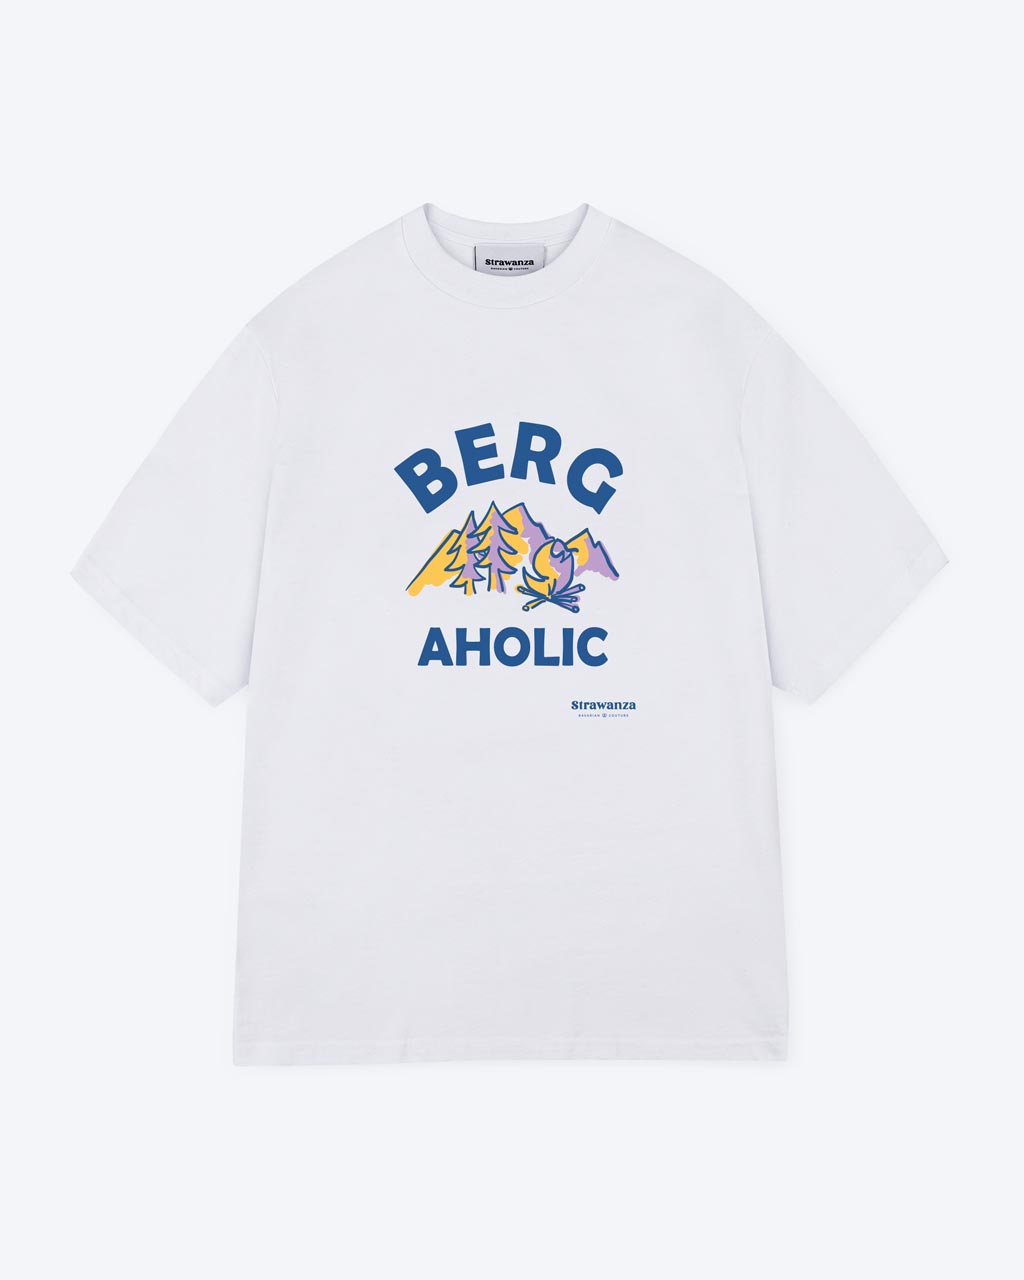 Ein weißes T-Shirt mit einem Berge und Lagerfeuerstelle als Motiv wo außen rum in blau noch der Schriftzug " BERGAHOLIC" steht.